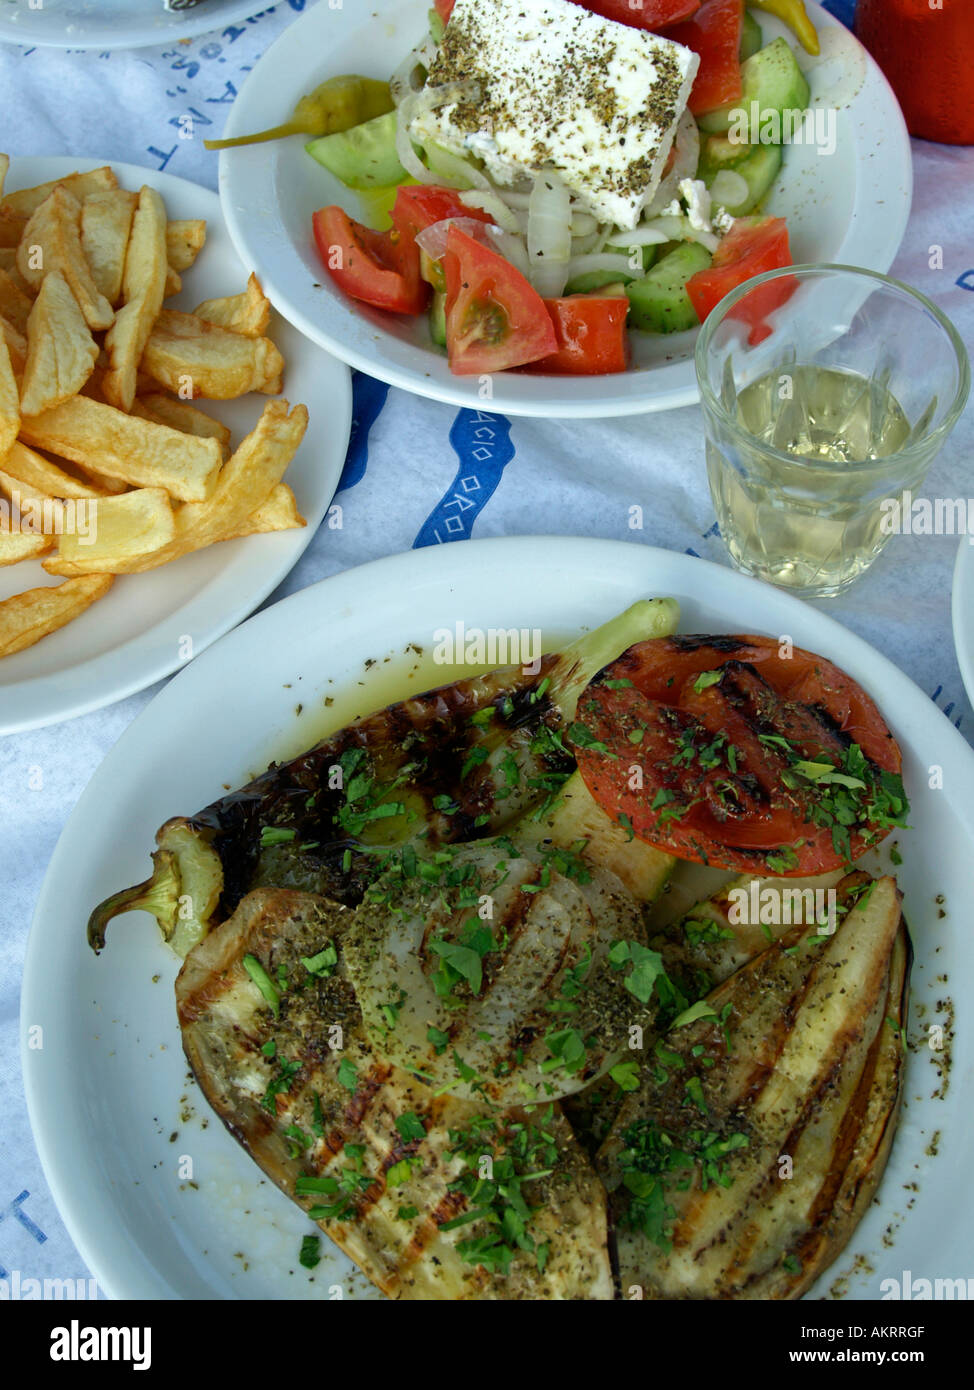 Tipica cucina greca insalata greca verdure grigliate melanzane Zucchine Melanzane cougette pomodori cipolle patate fritte in olive Foto Stock